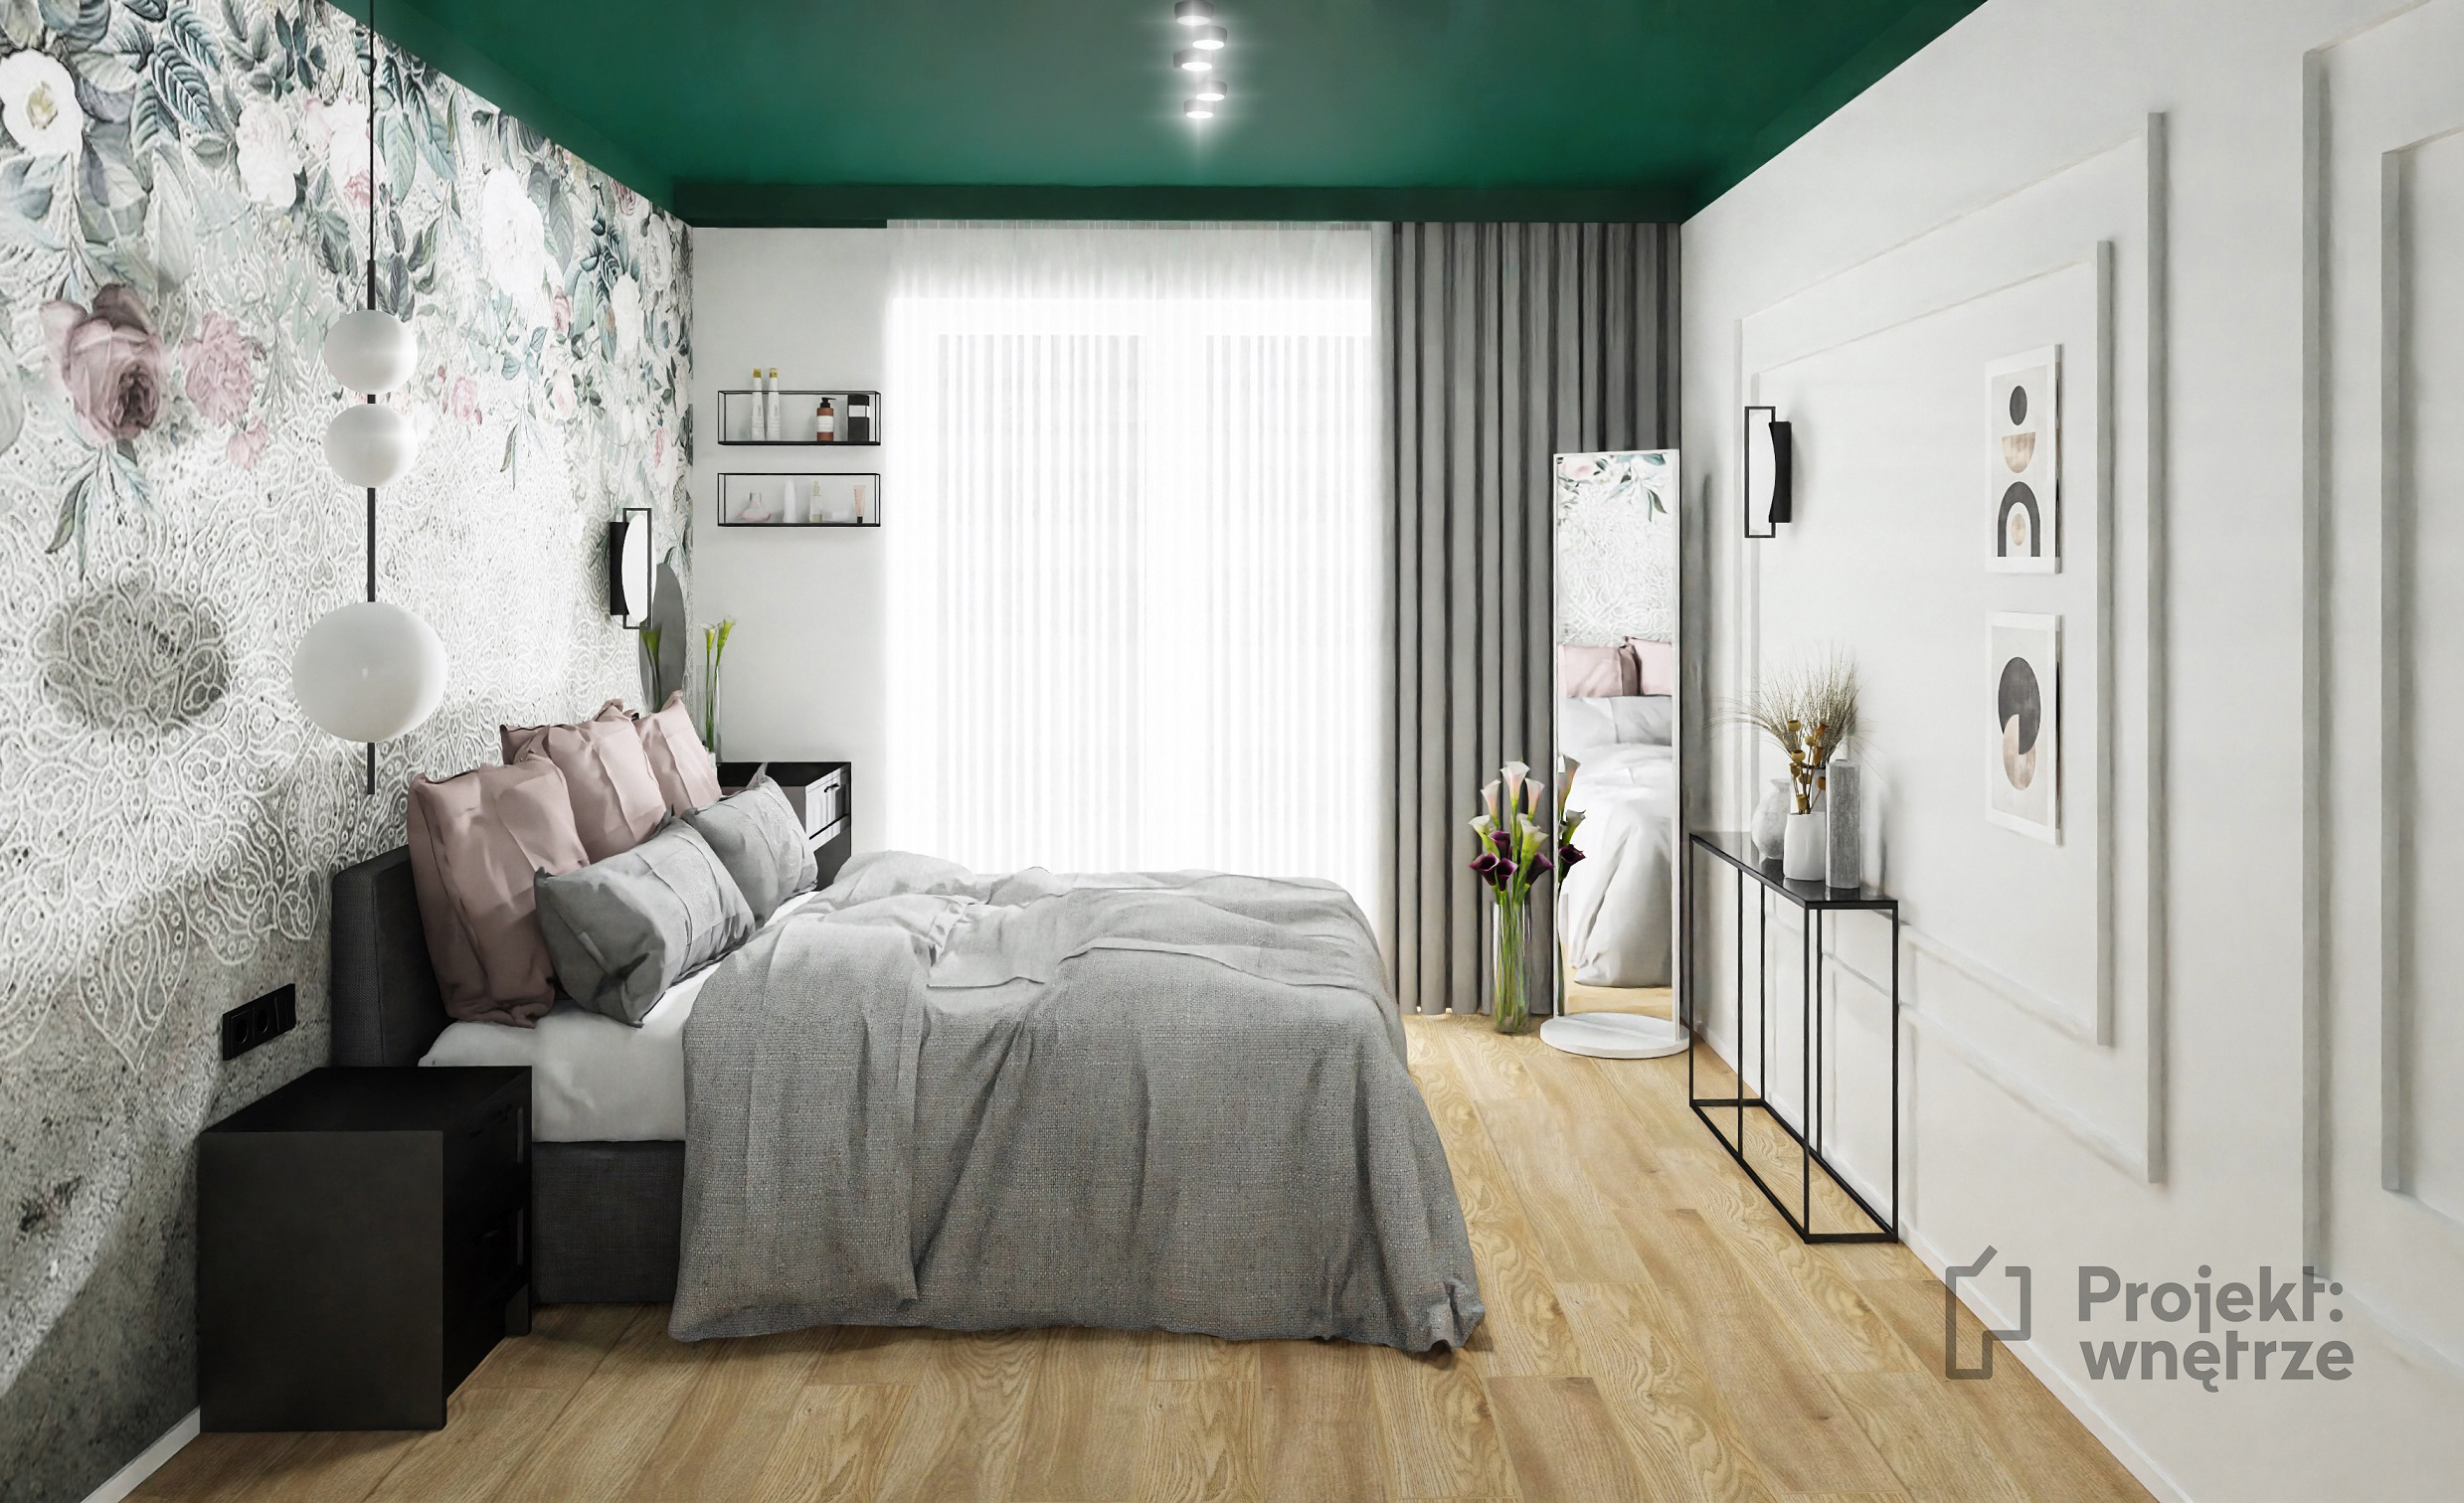 PROJEKT WNĘTRZE - Projekt sypialni w ciemnej zieleni, z tapetą i sztukaterią